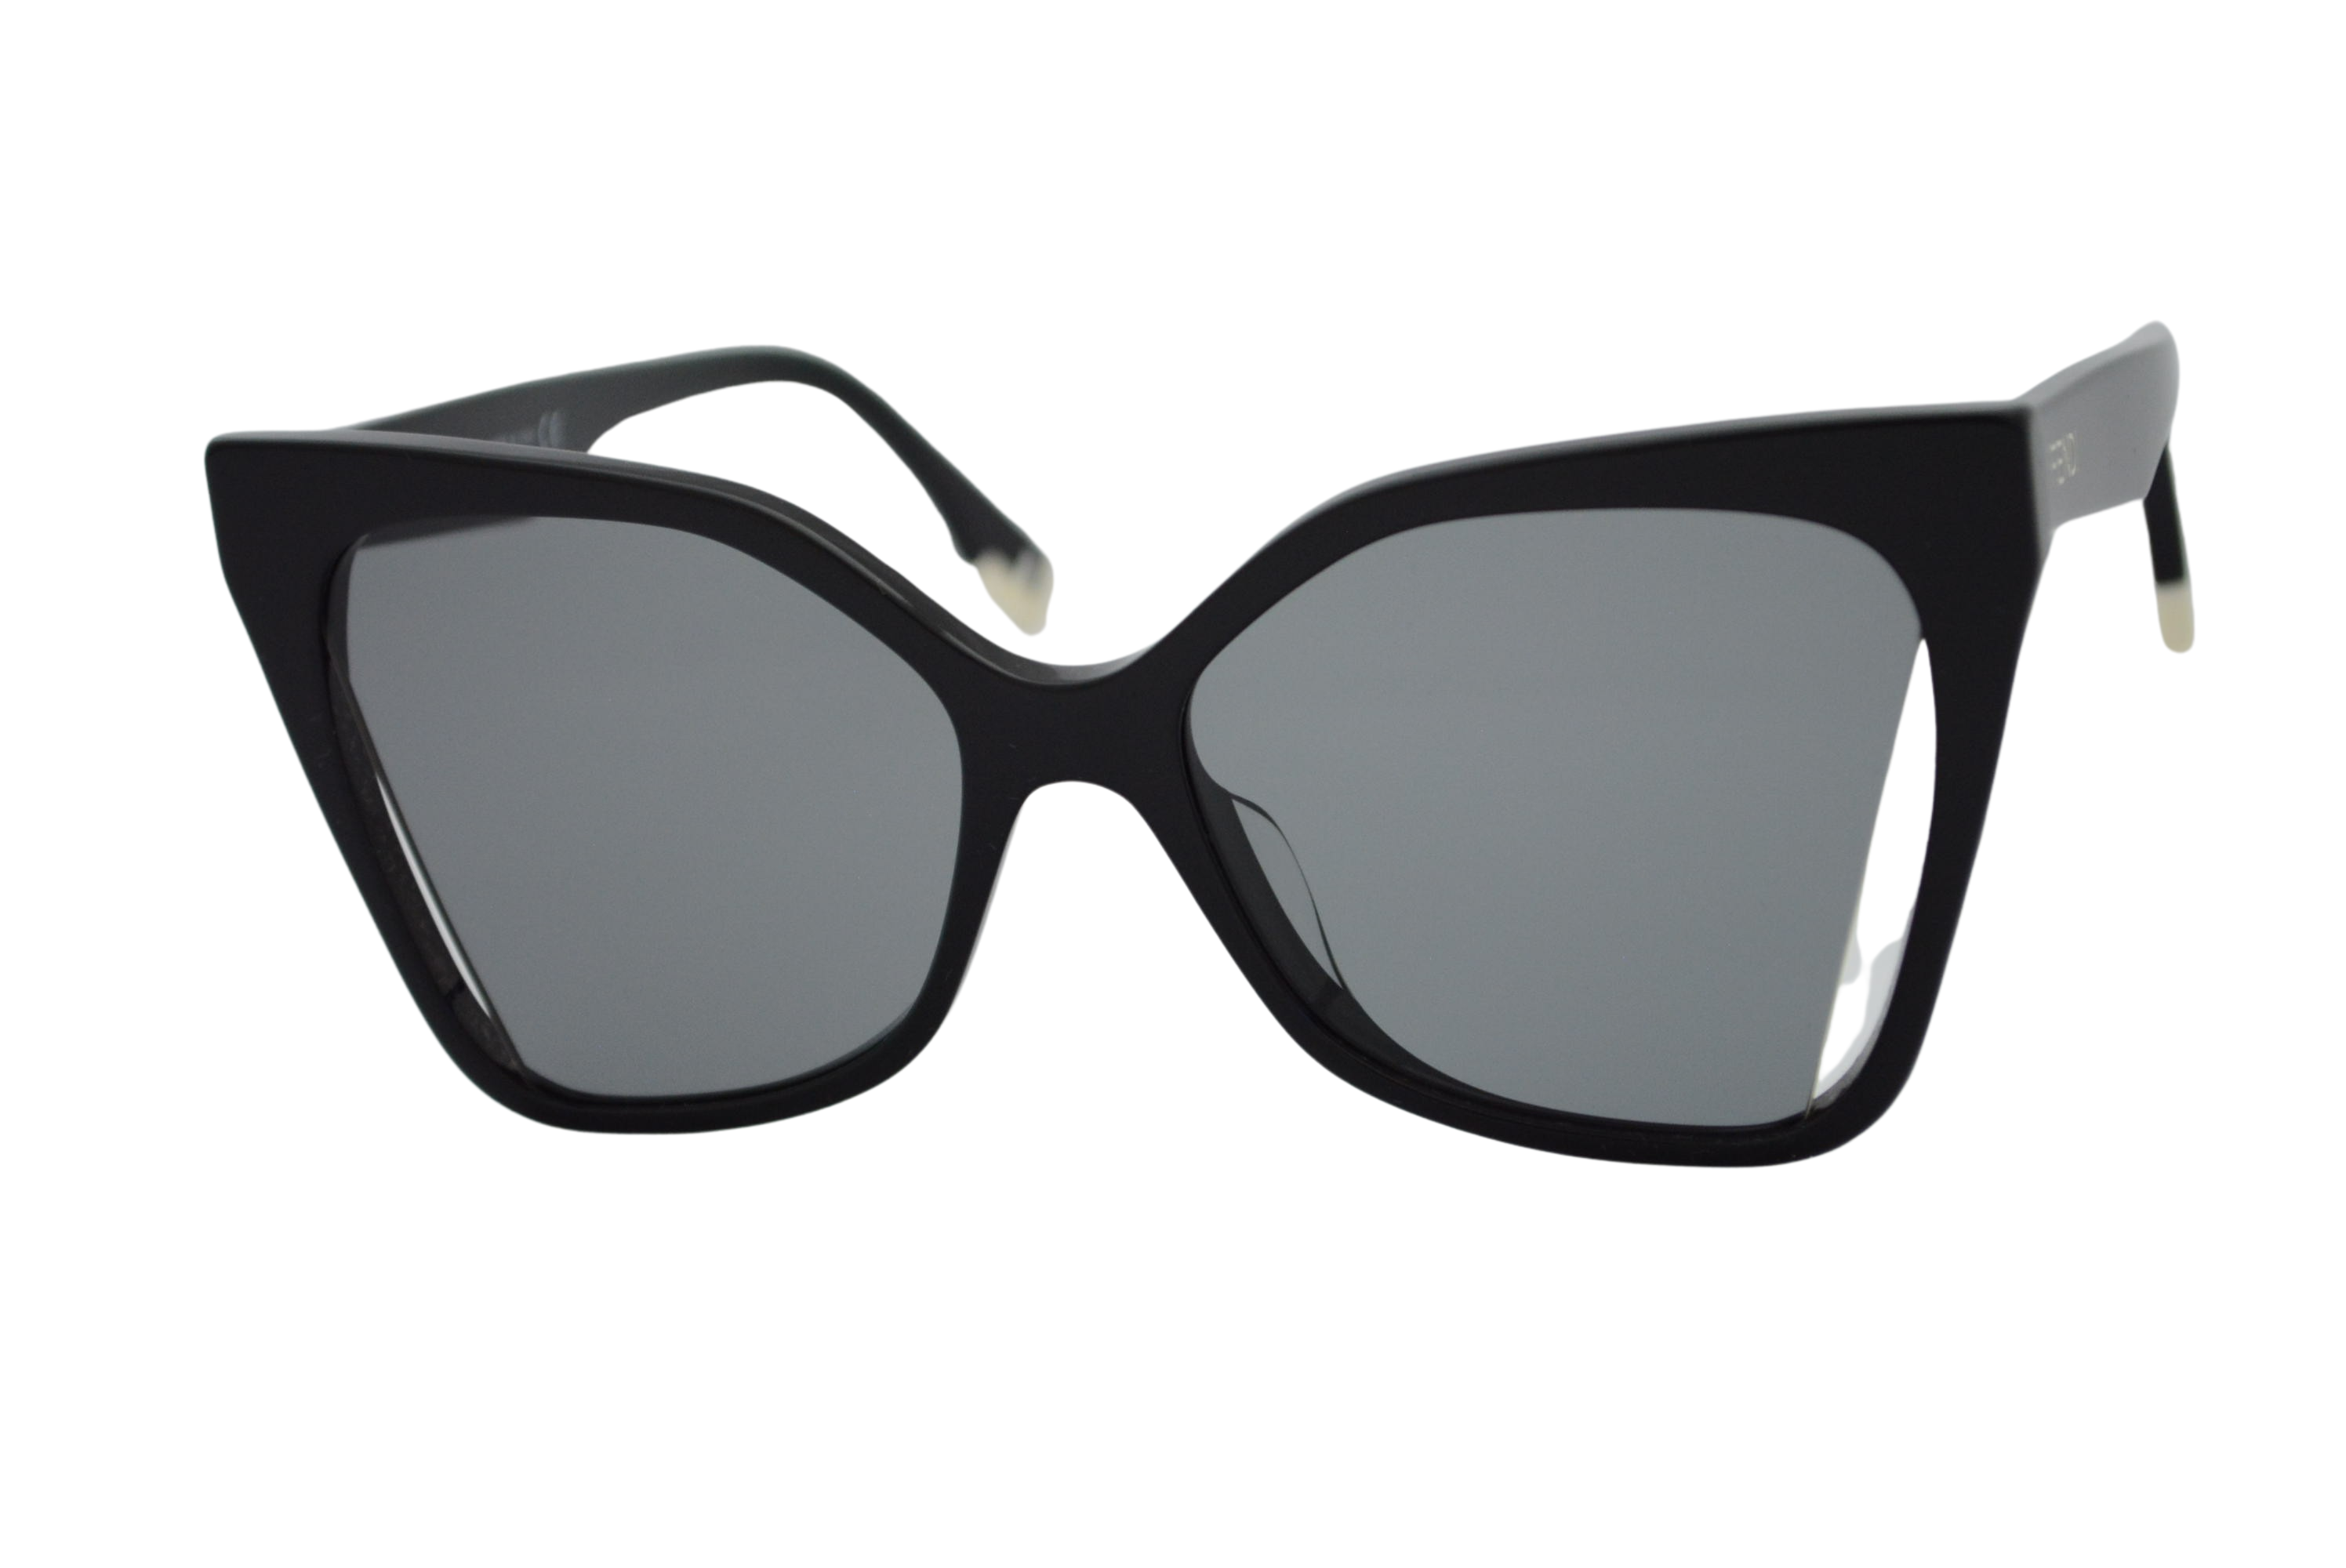 óculos de sol Fendi mod FE40010u 01a